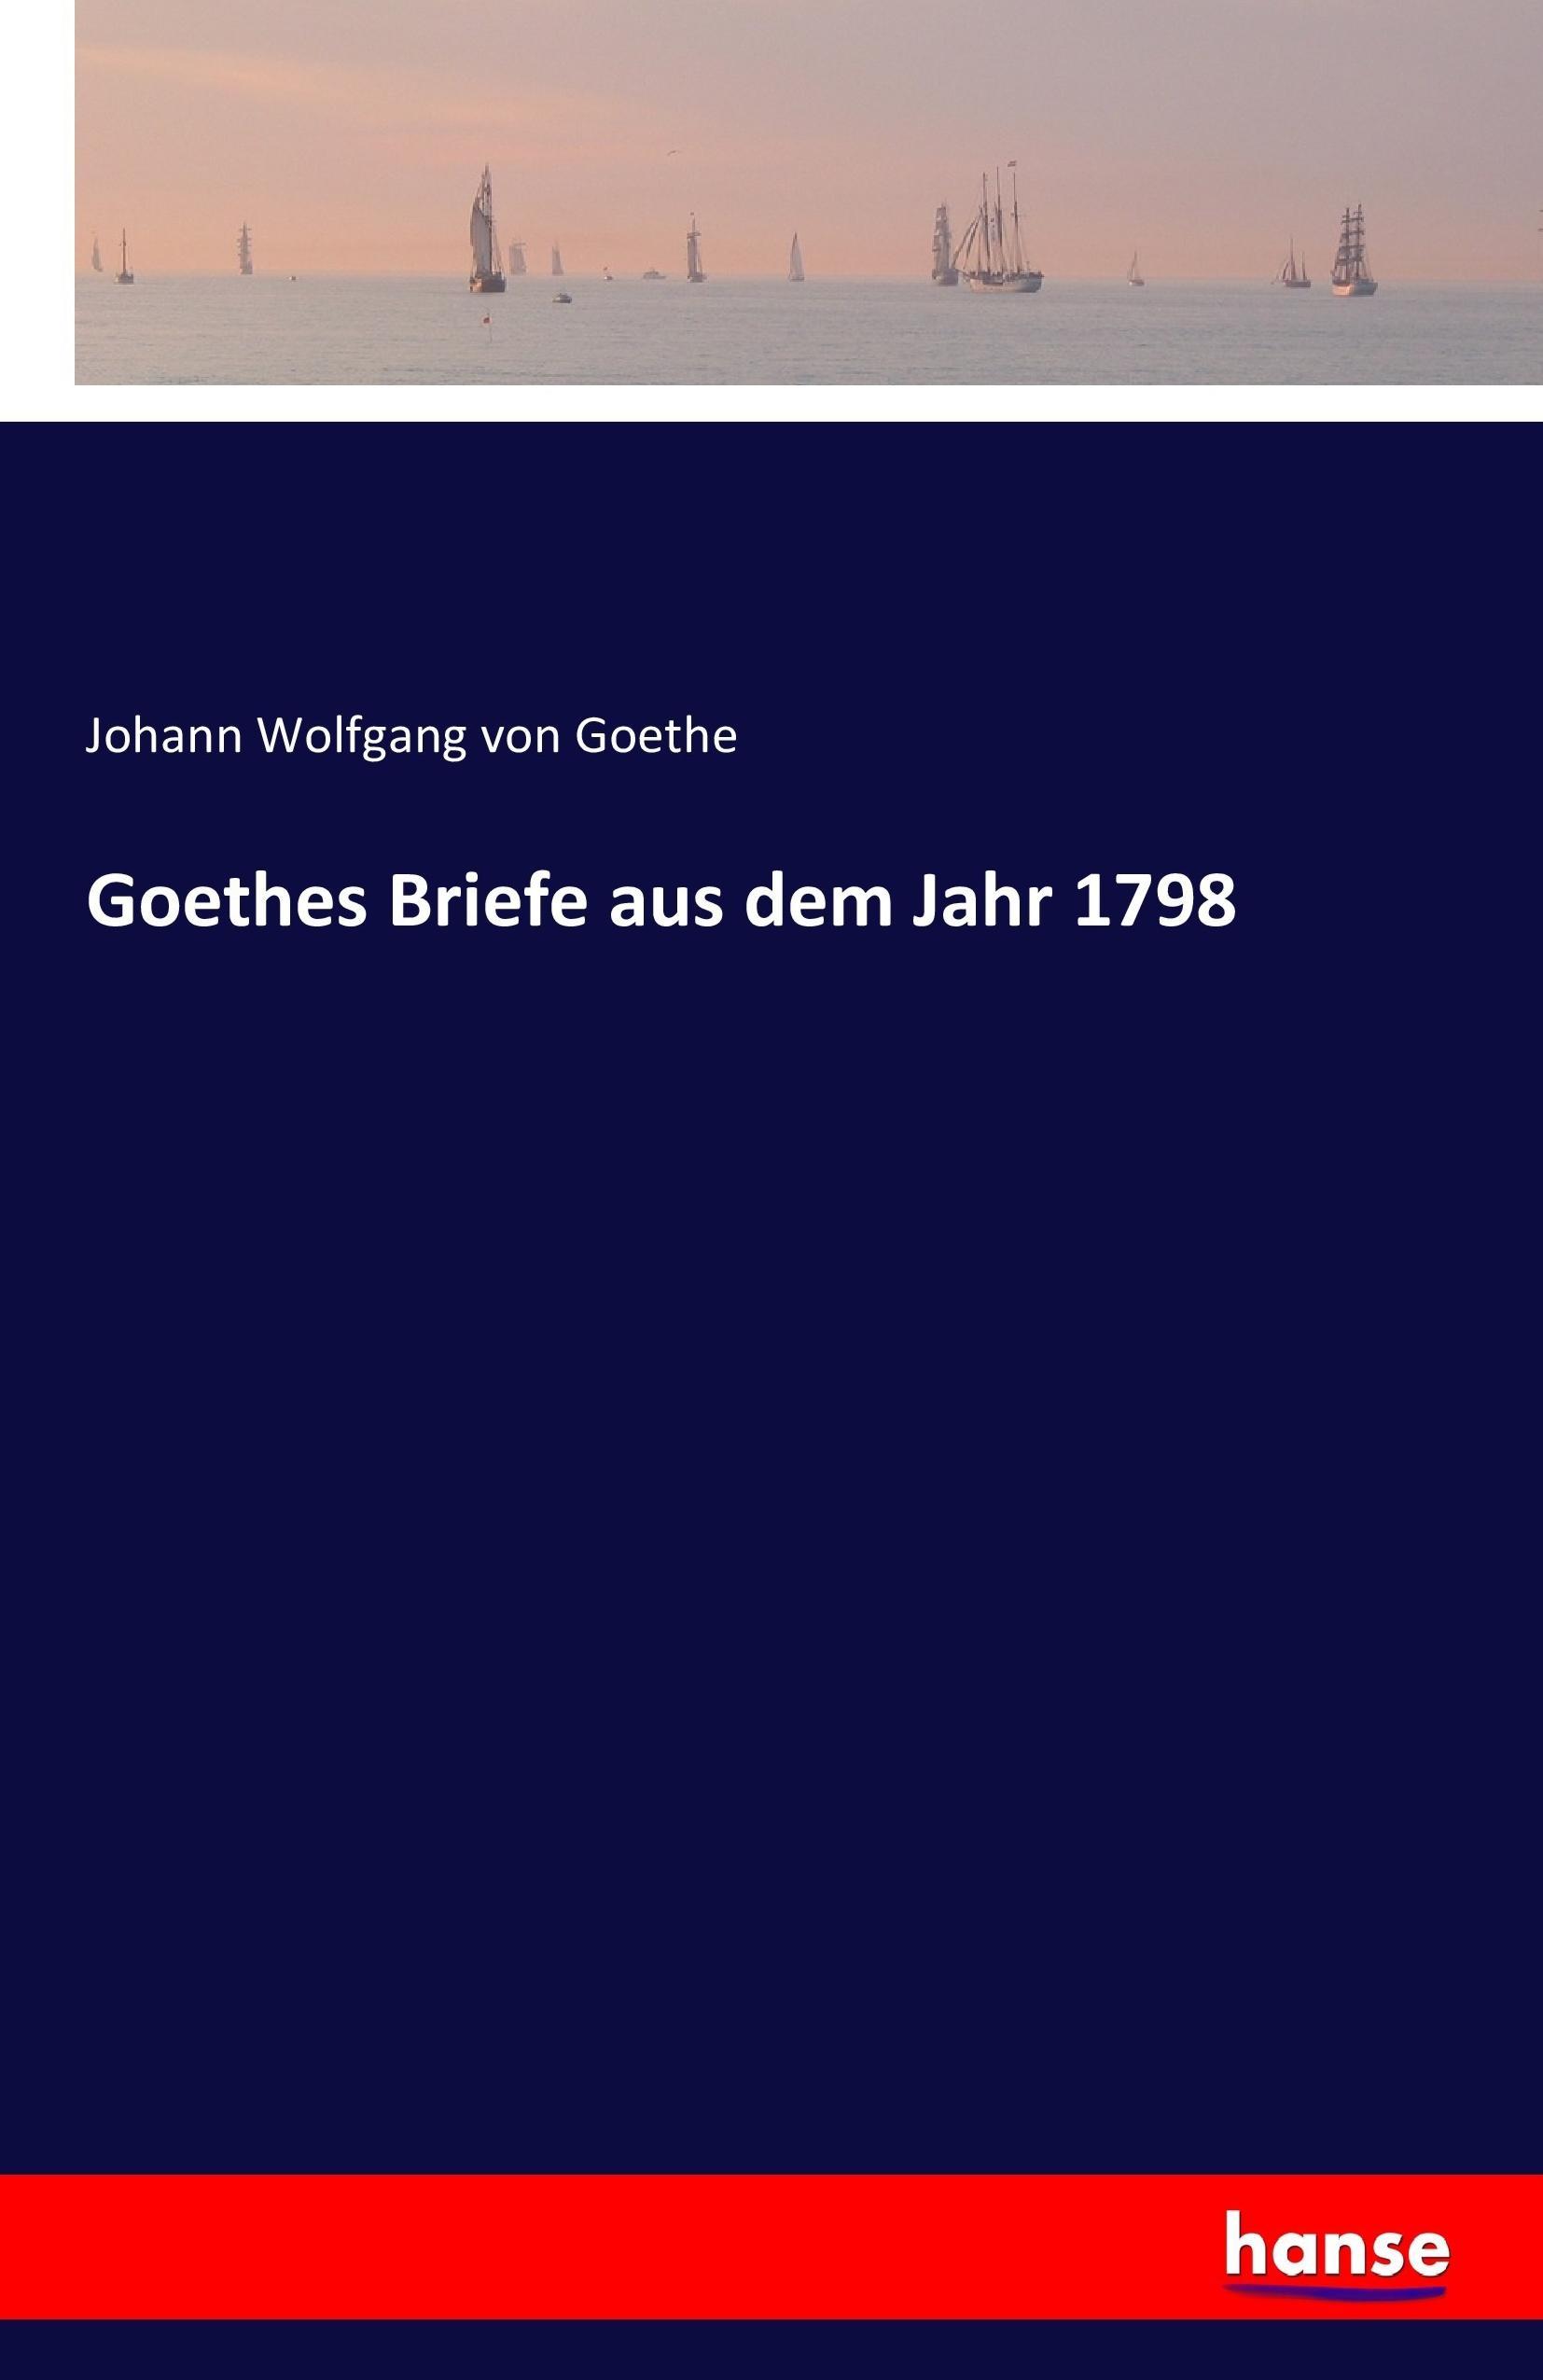 Goethes Briefe aus dem Jahr 1798 / Johann Wolfgang von Goethe / Taschenbuch / Paperback / 452 S. / Deutsch / 2017 / hansebooks / EAN 9783742851499 - Goethe, Johann Wolfgang von